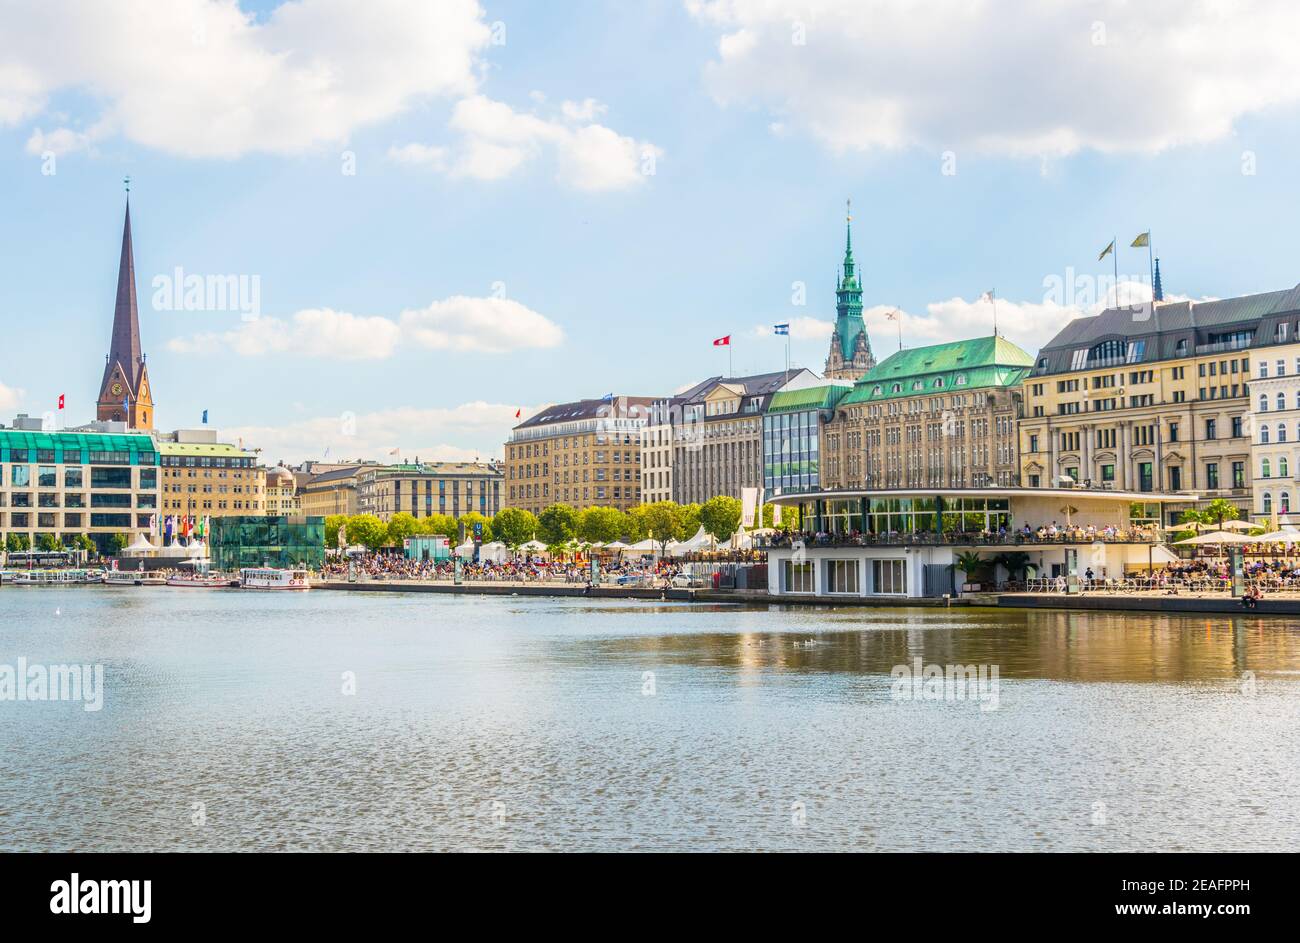 Vista del casco antiguo de Hamburgo, detrás del lago binnenalster, Alemania Foto de stock